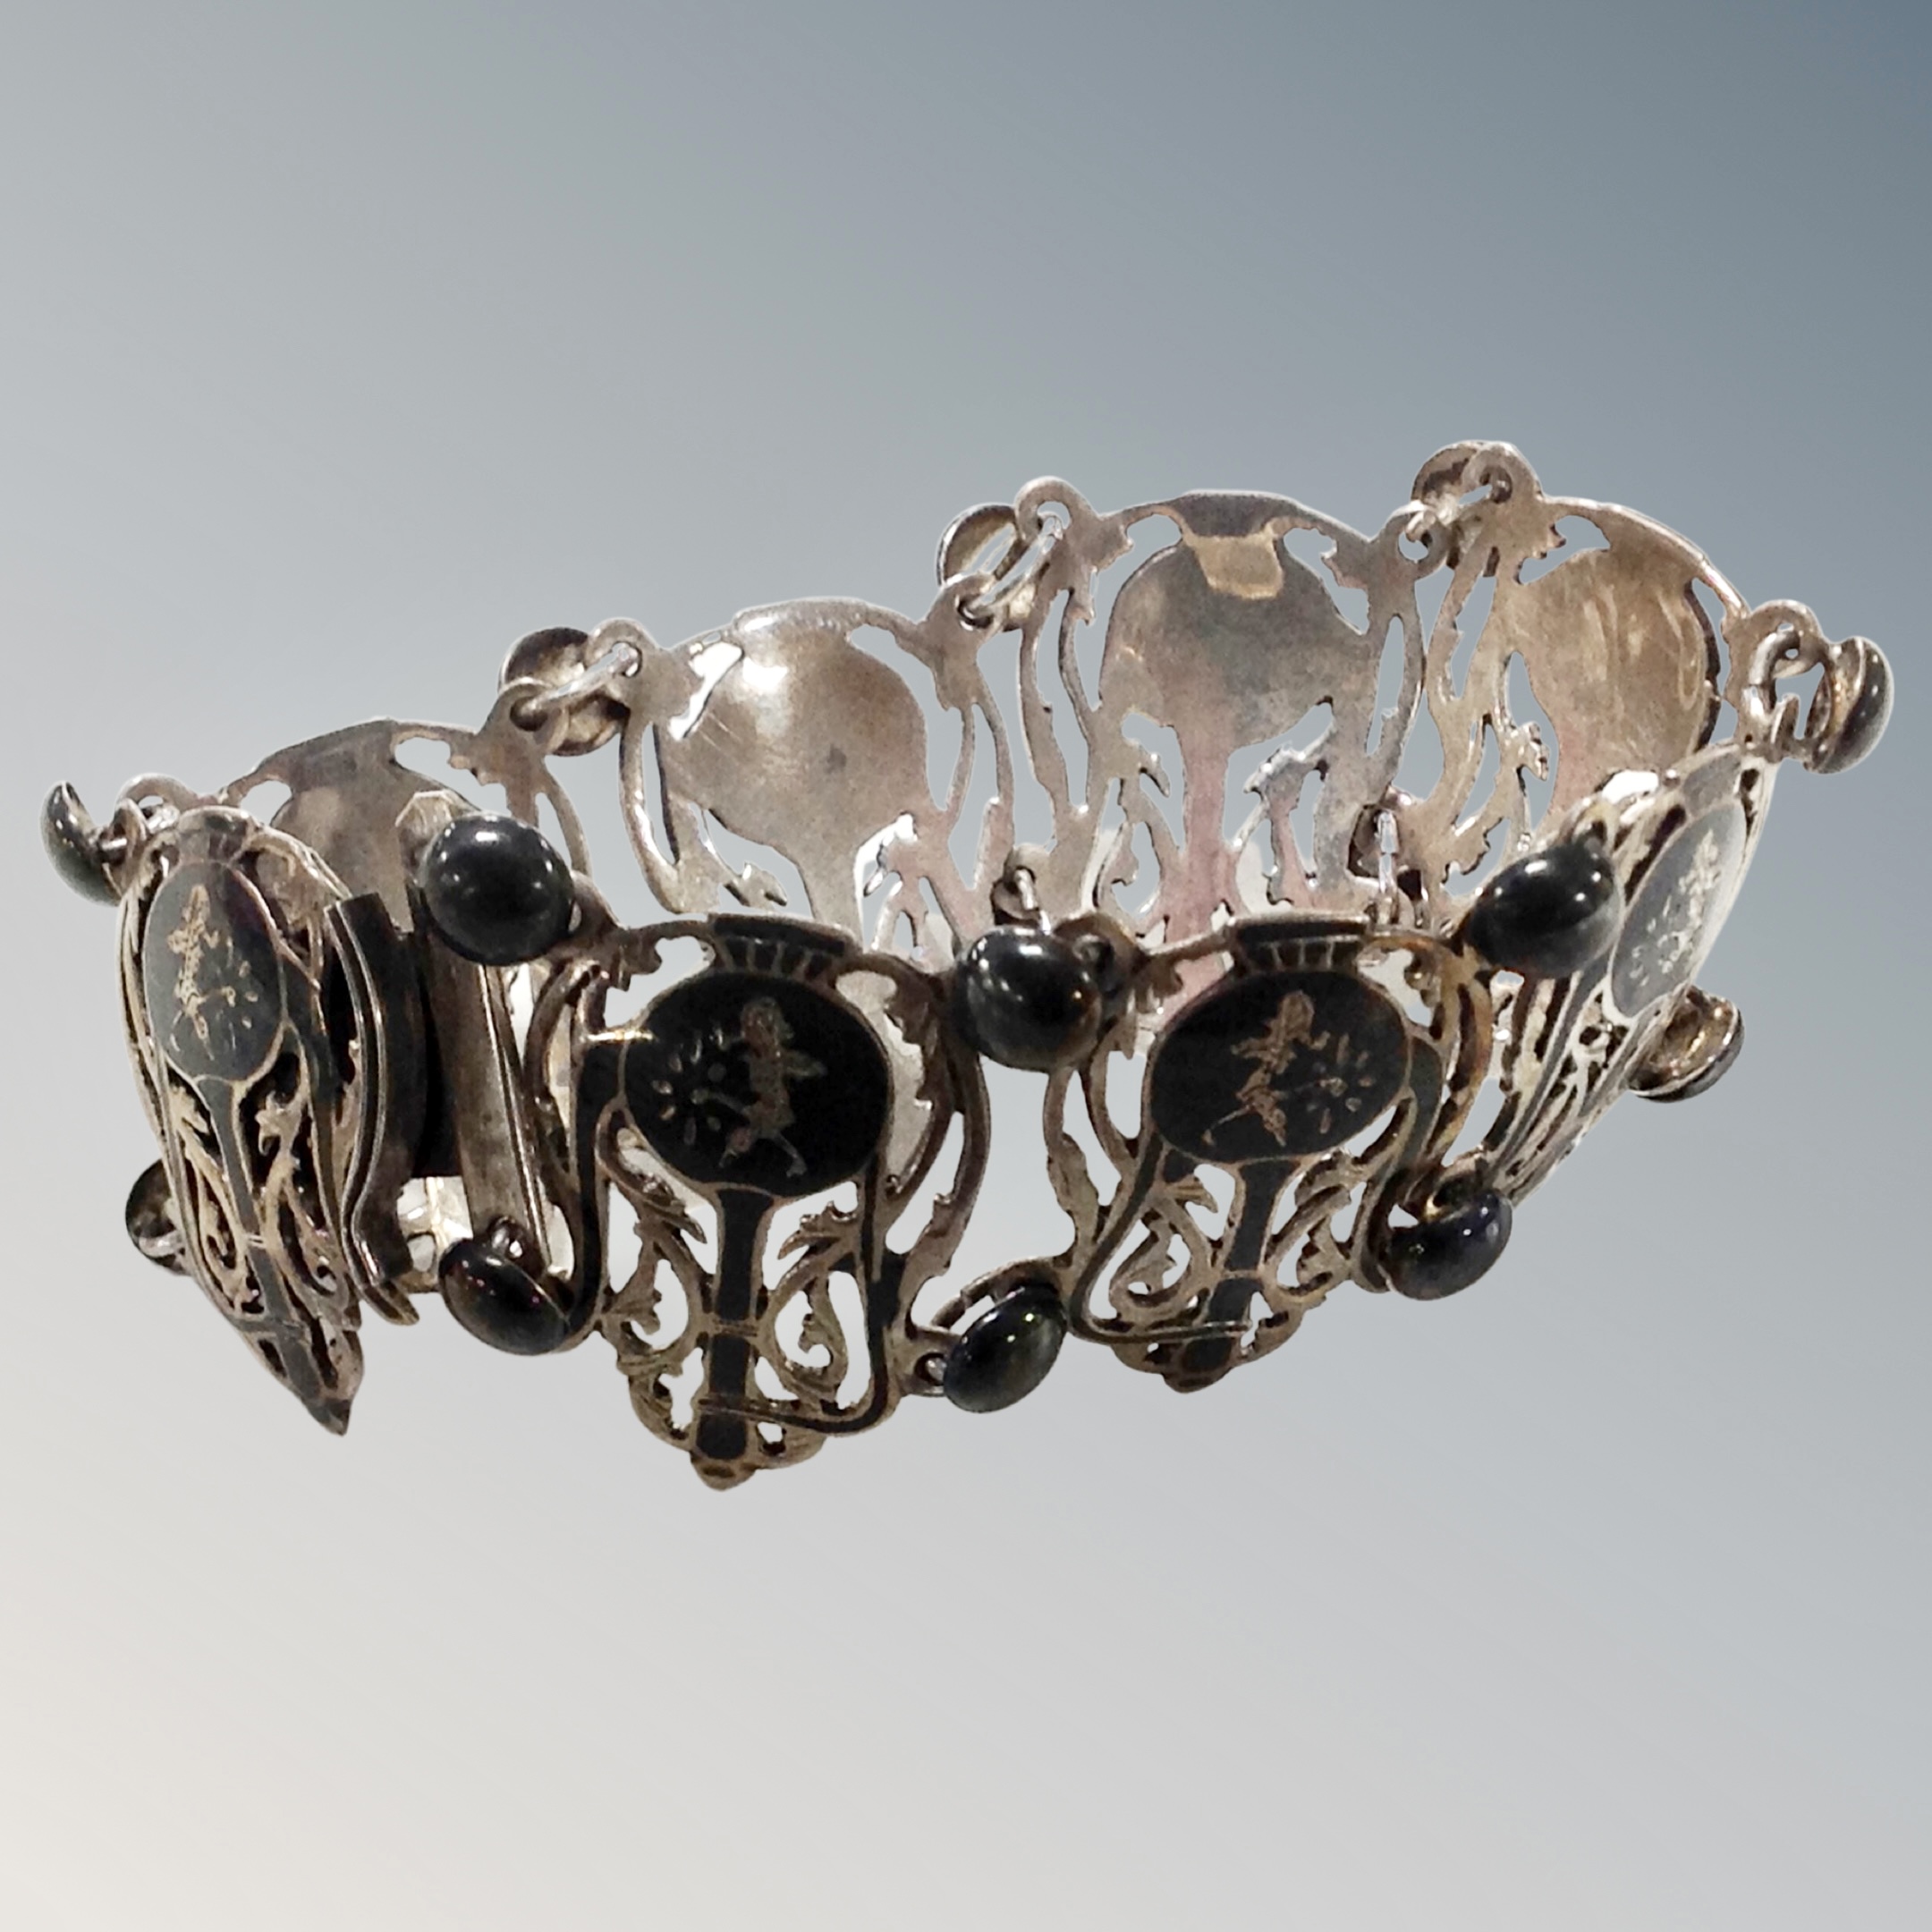 A silver Art Nouveau bracelet.